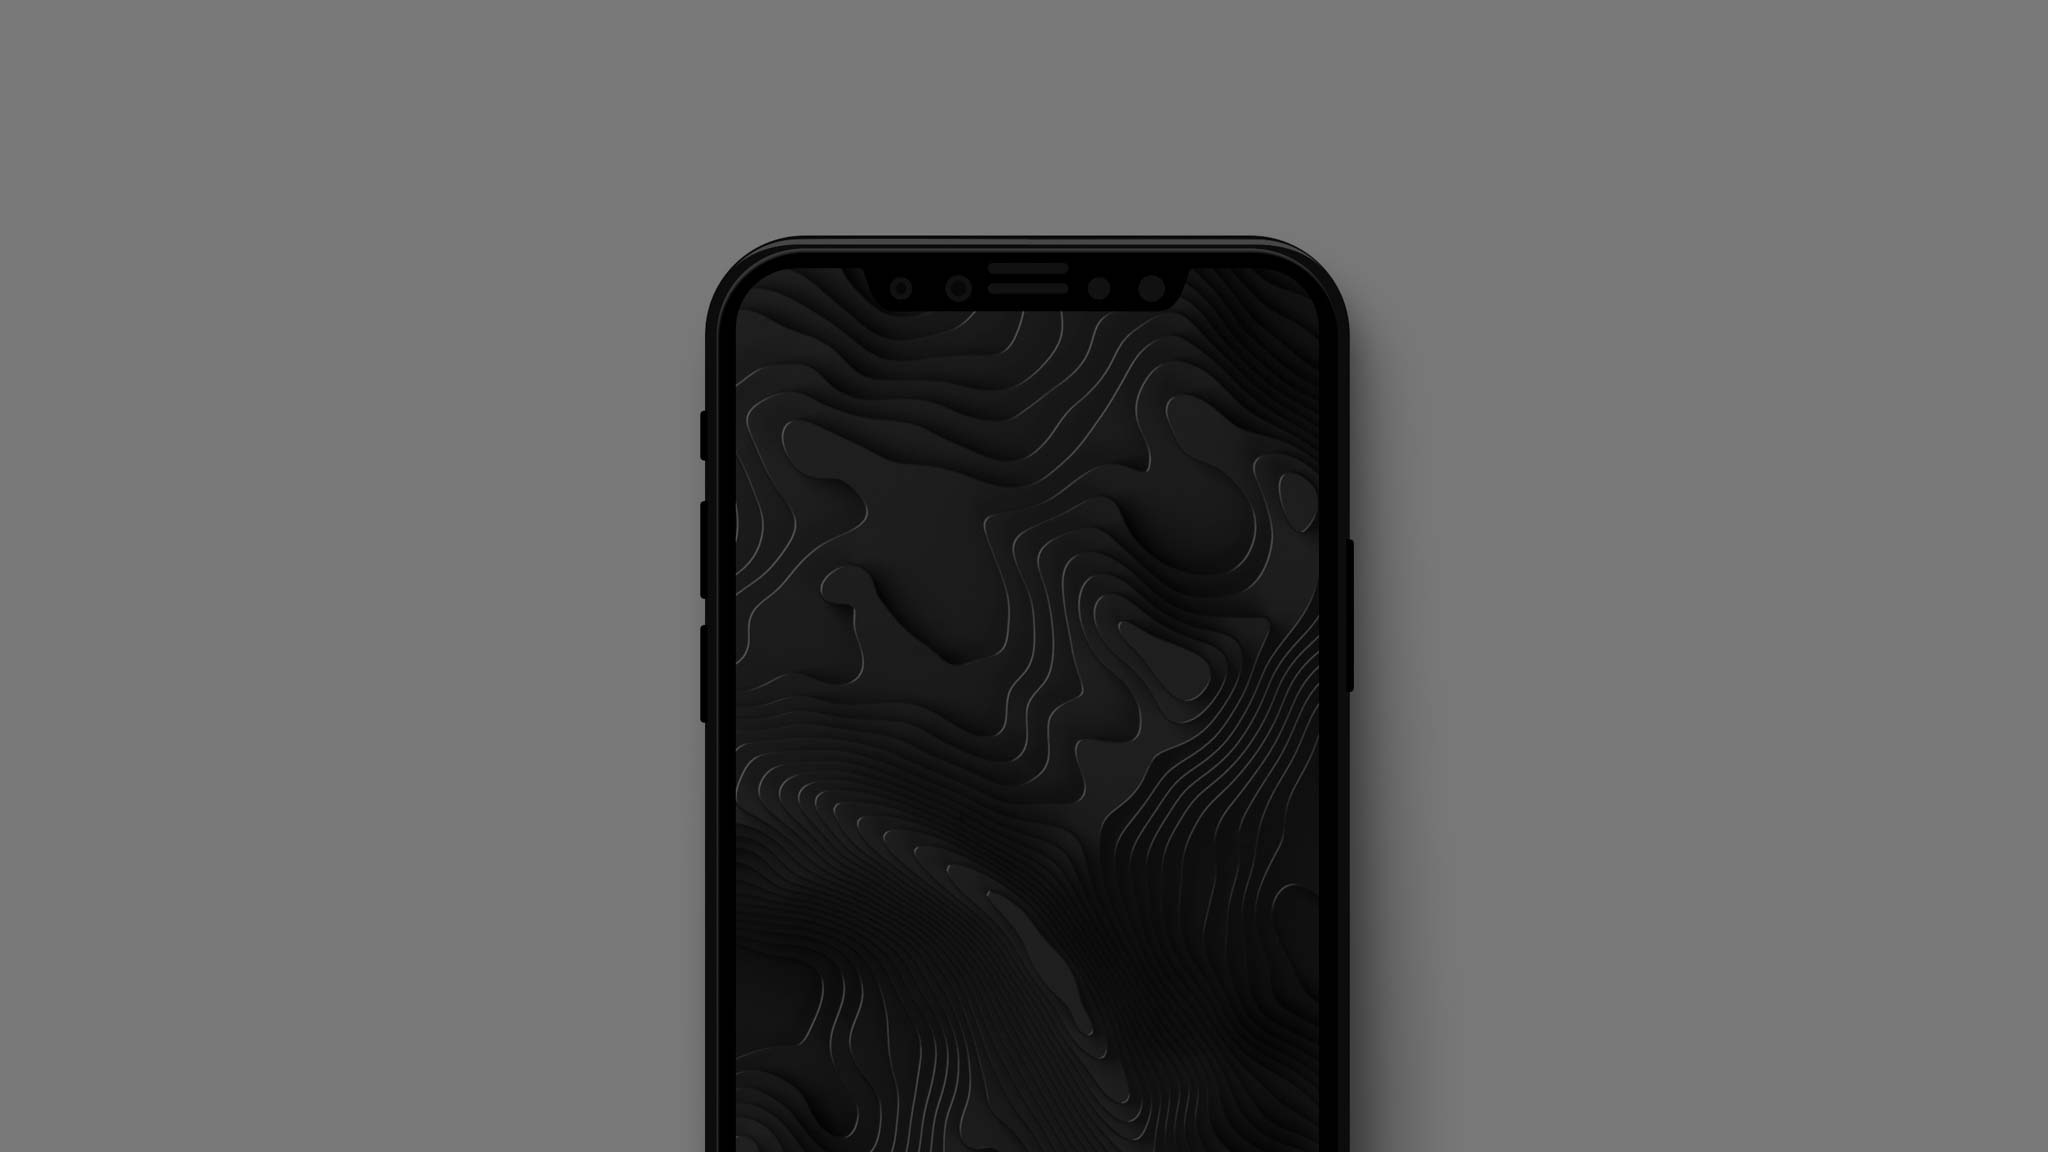 Wallpapers đẹp cho iDevice: Ảnh nền màu tối giúp tiết kiệm pin cho iPhone X